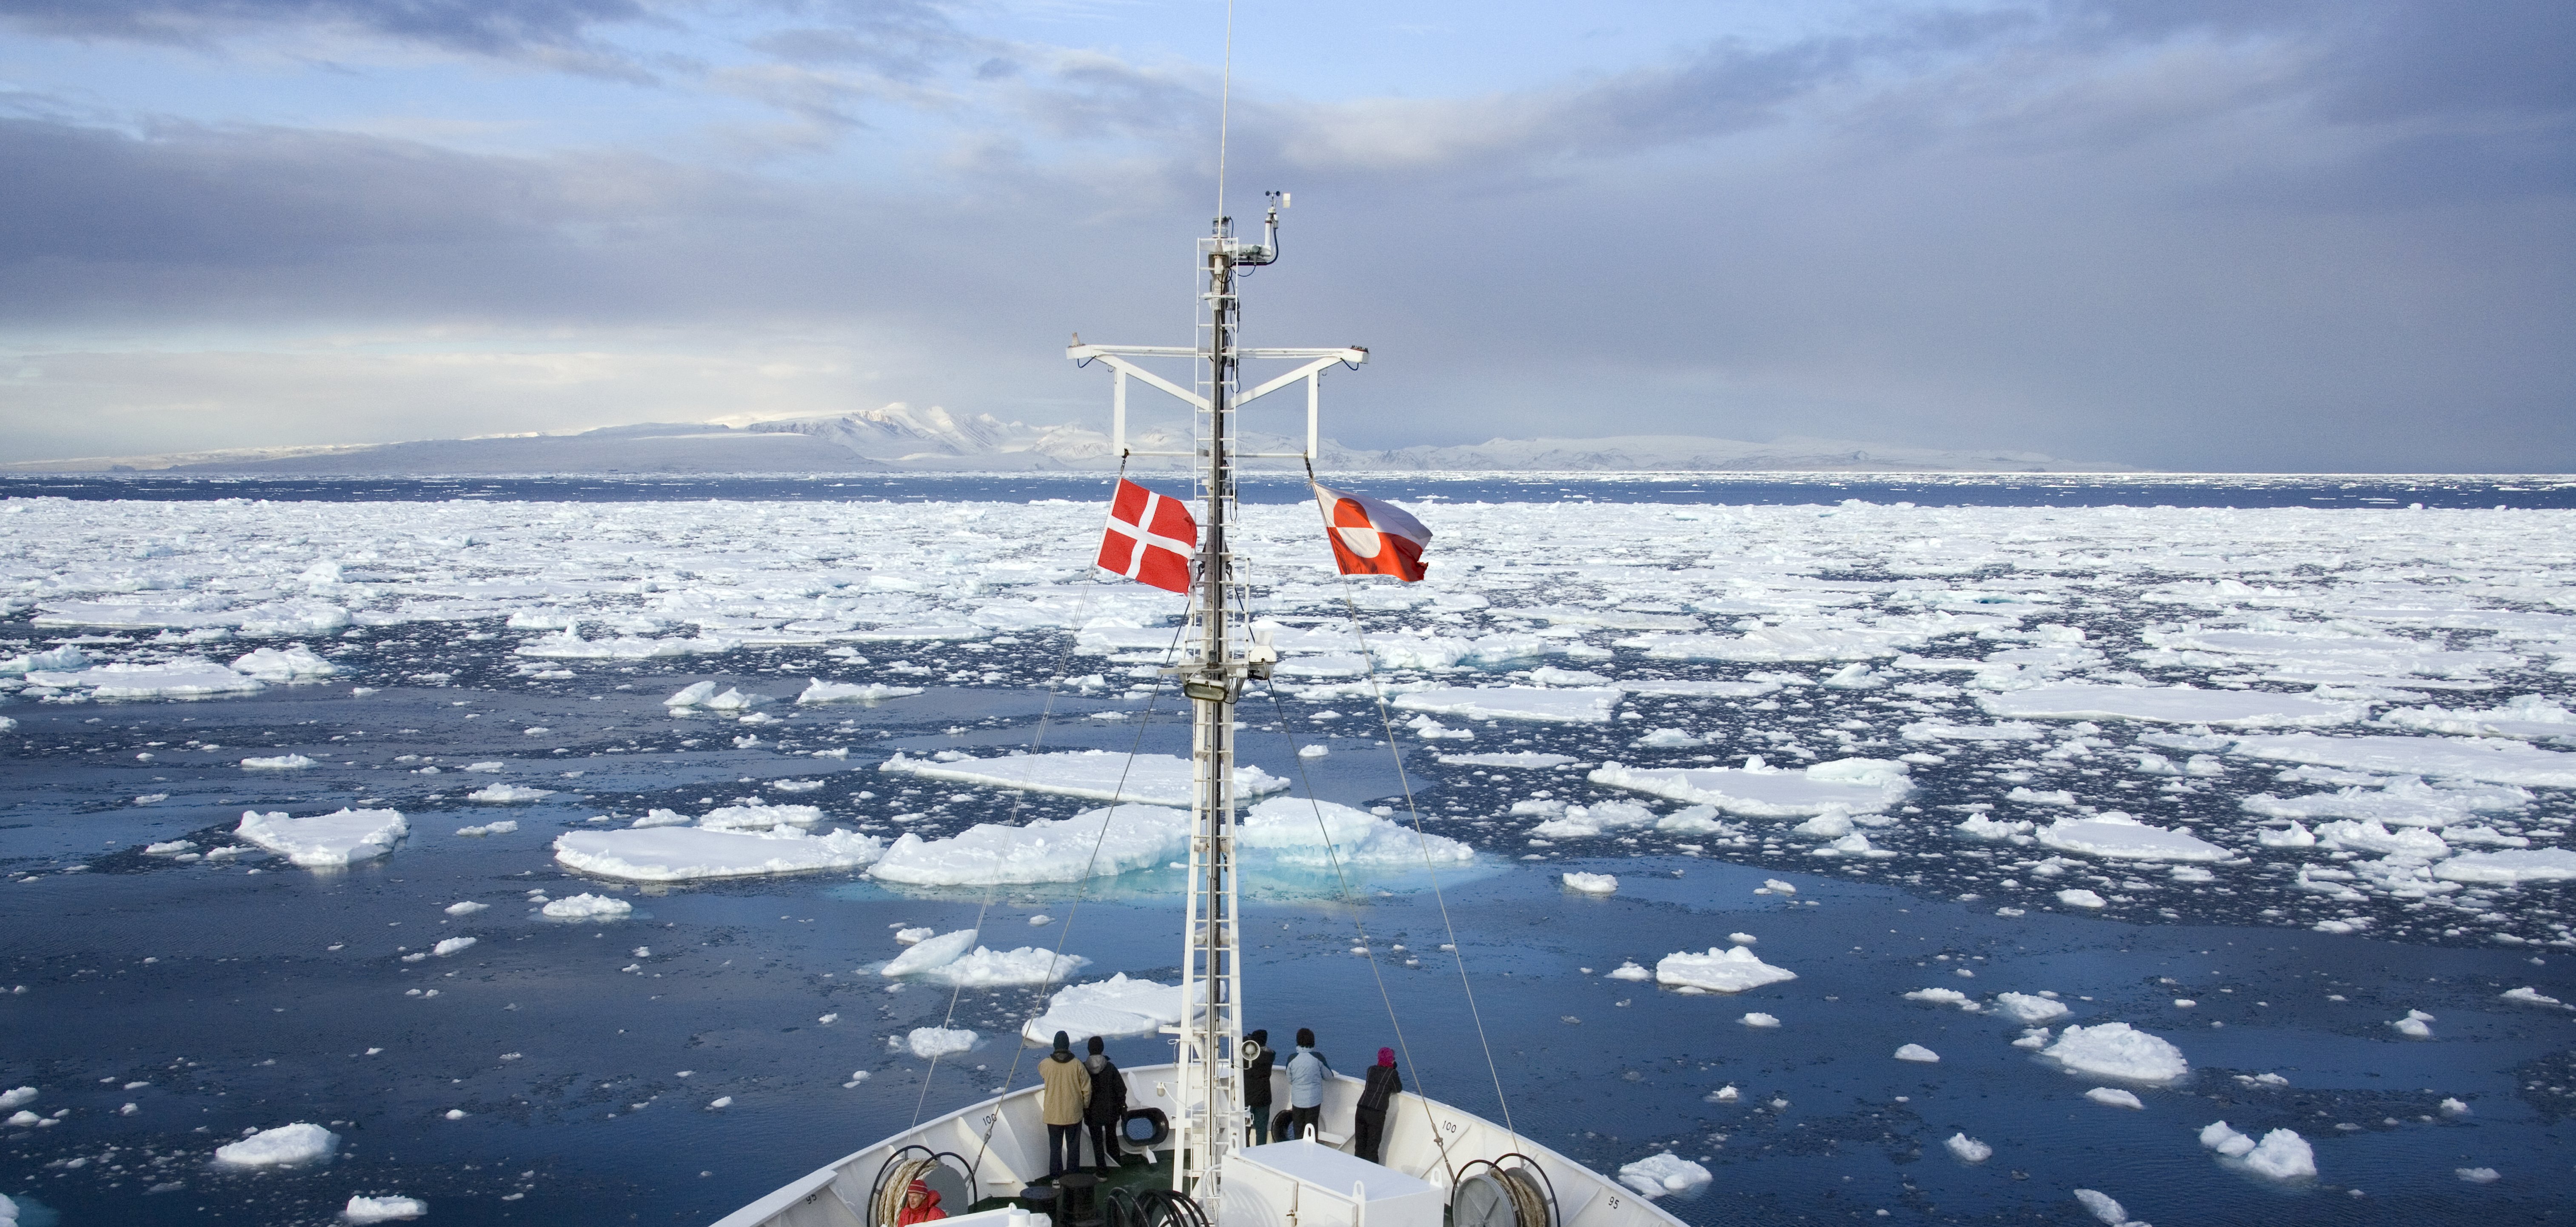 SKib der sejler gennem is. Skibet har henholdsvis dansk og grøndlansk flag på.